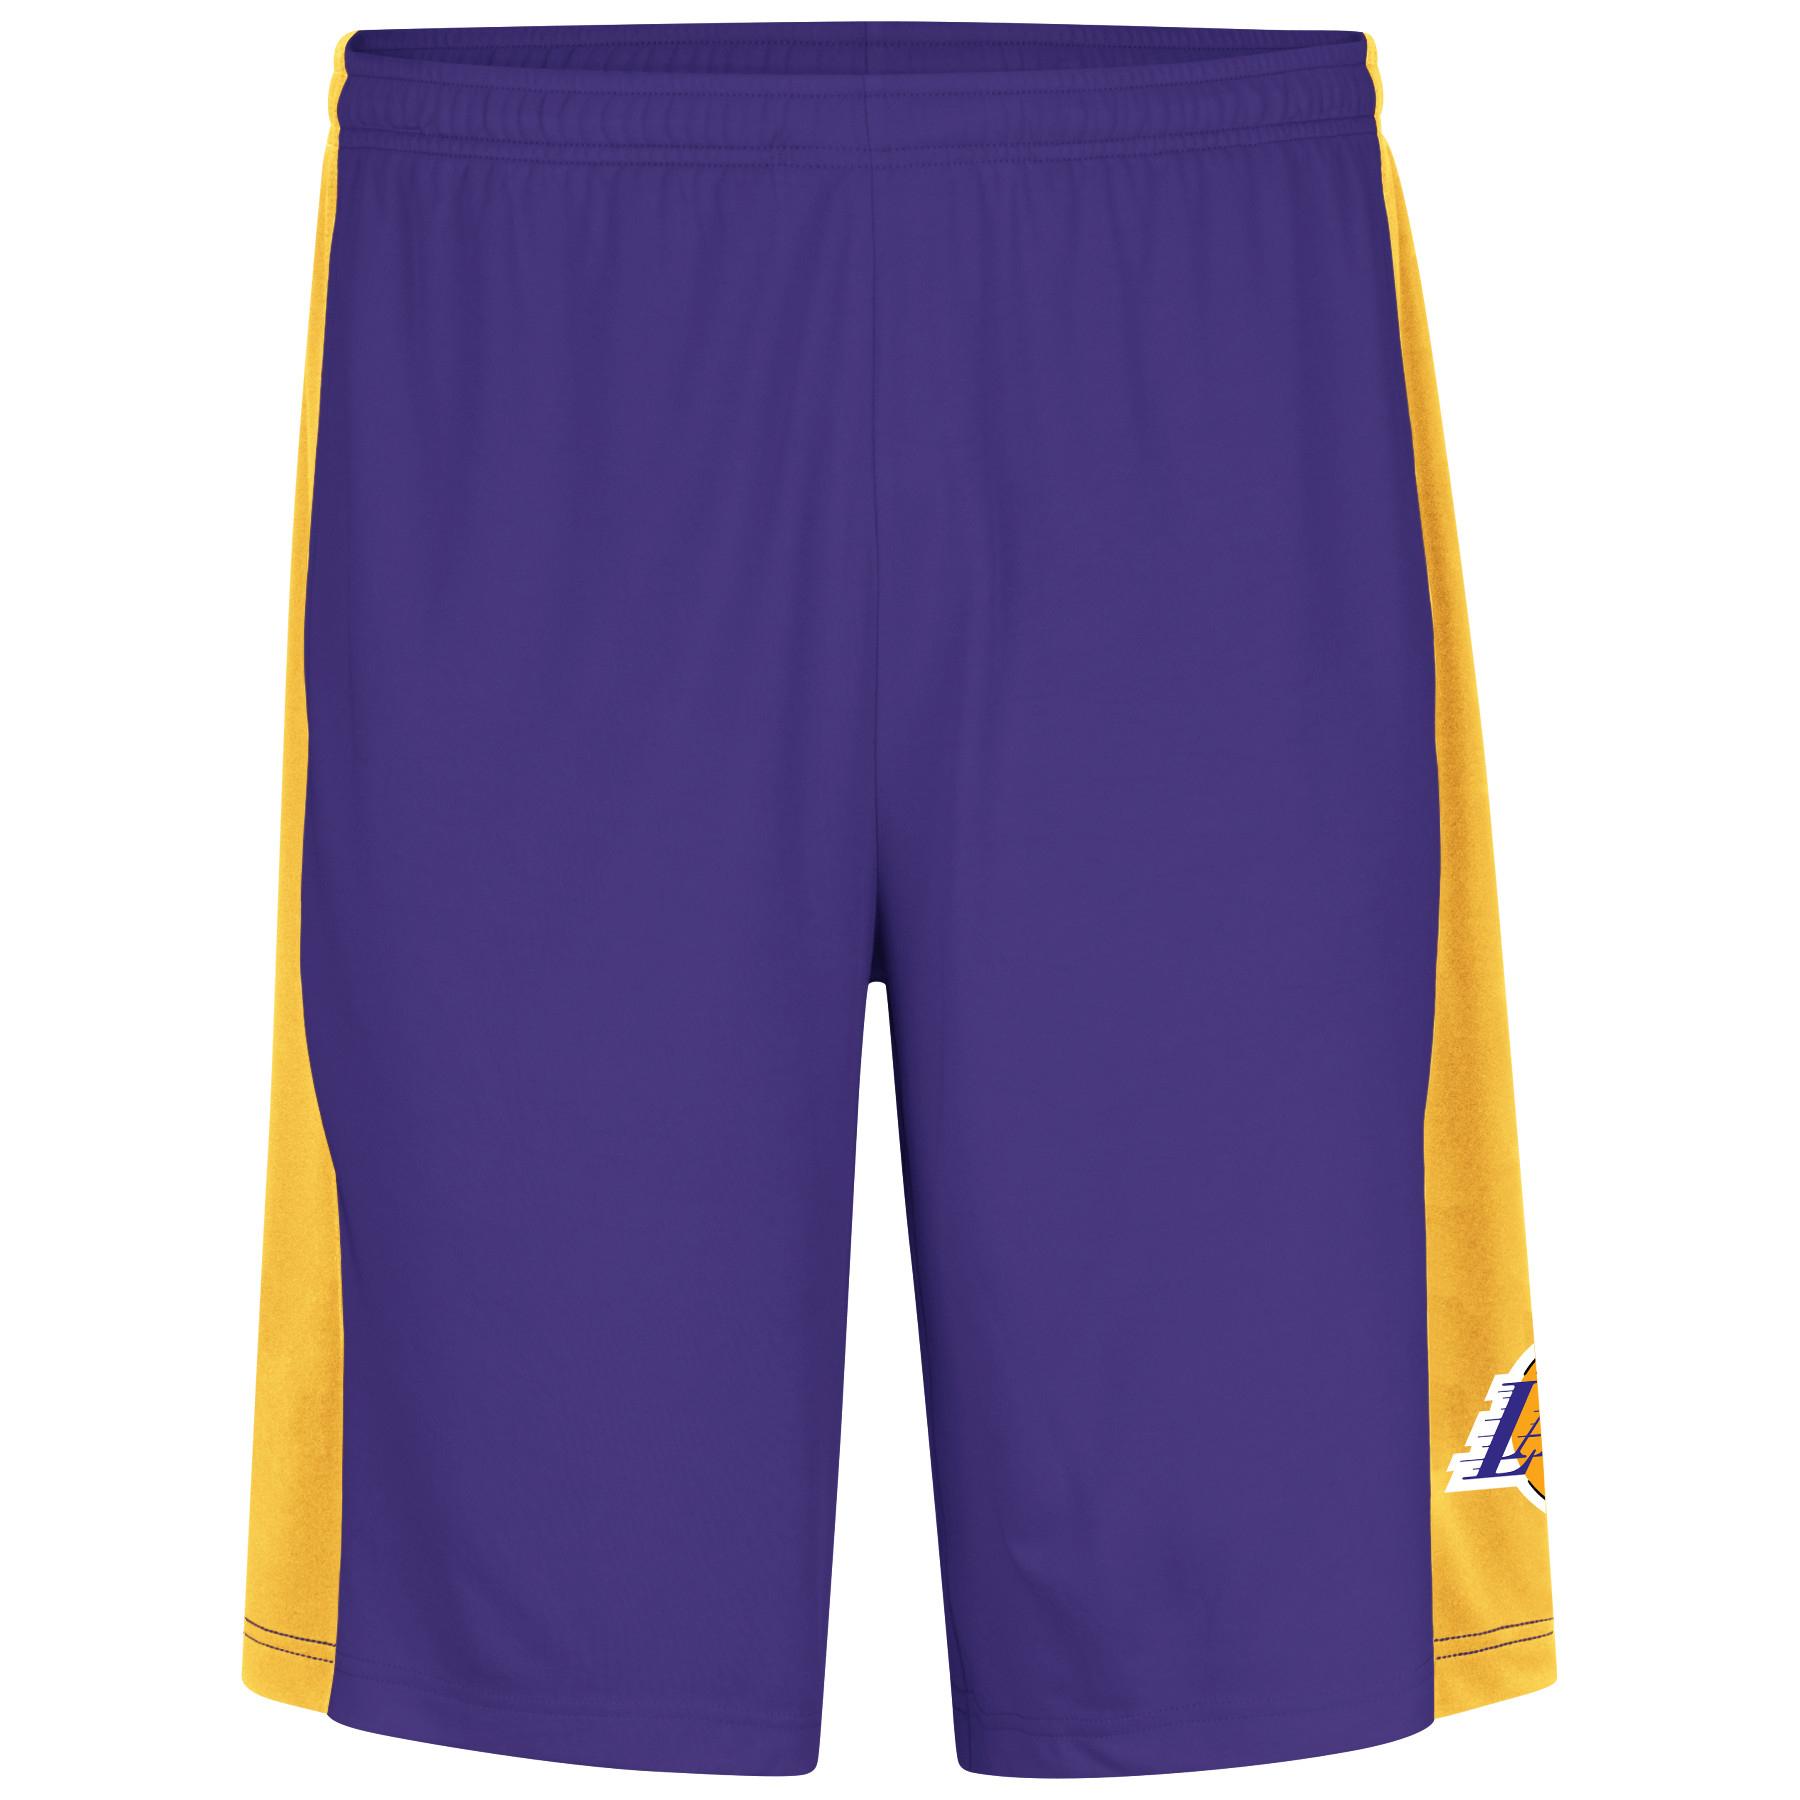 NBA(CANONICAL) Men's Big & Tall Basketball Shorts - Los Angeles Lakers